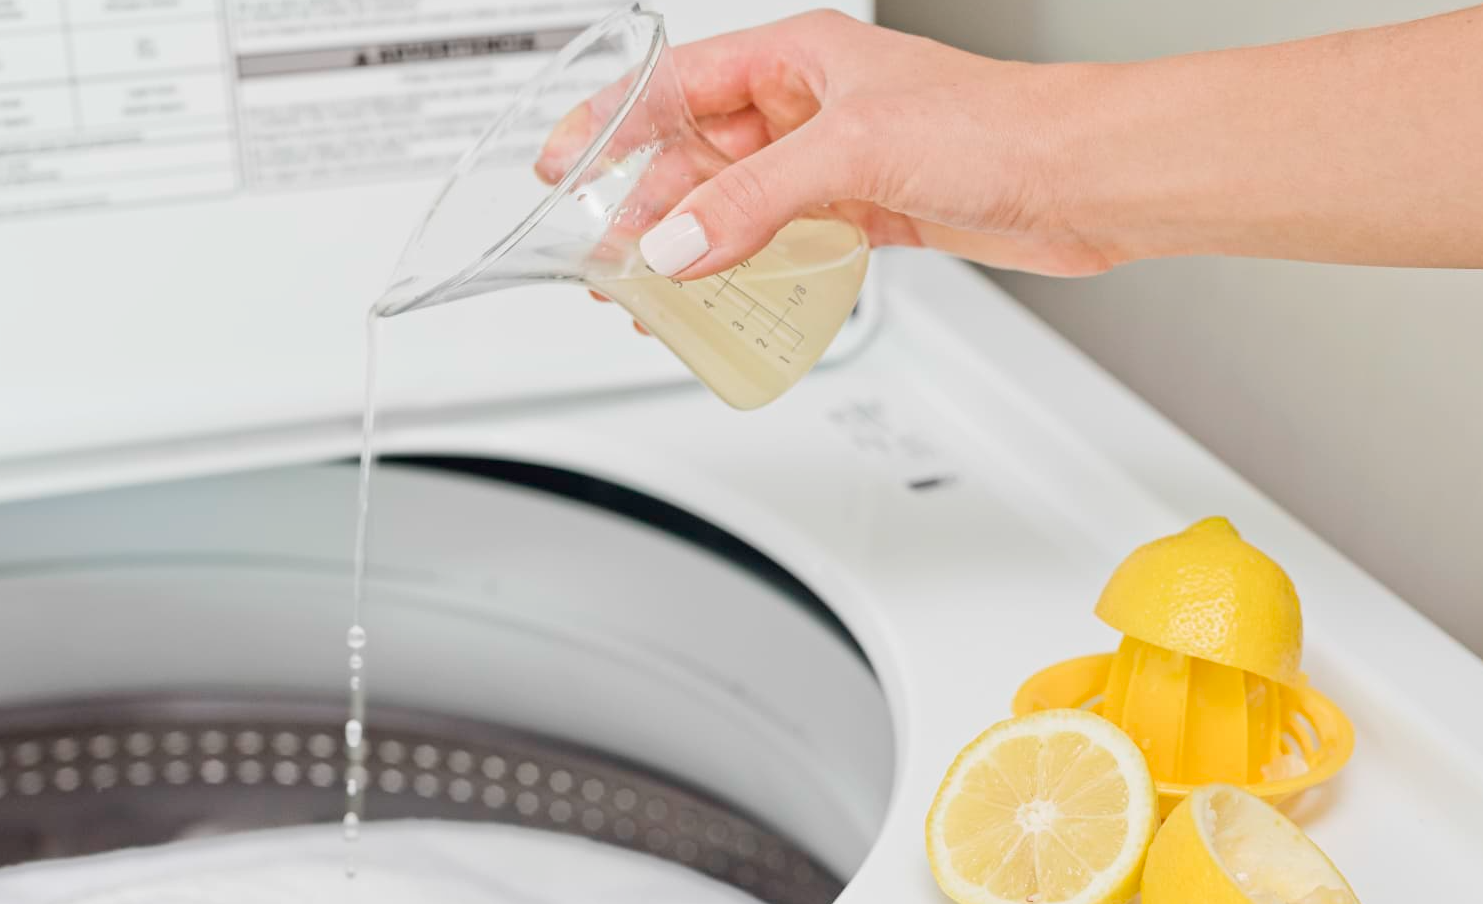 Виявлення прихованих ризиків використання лимонної кислоти у пральній машині